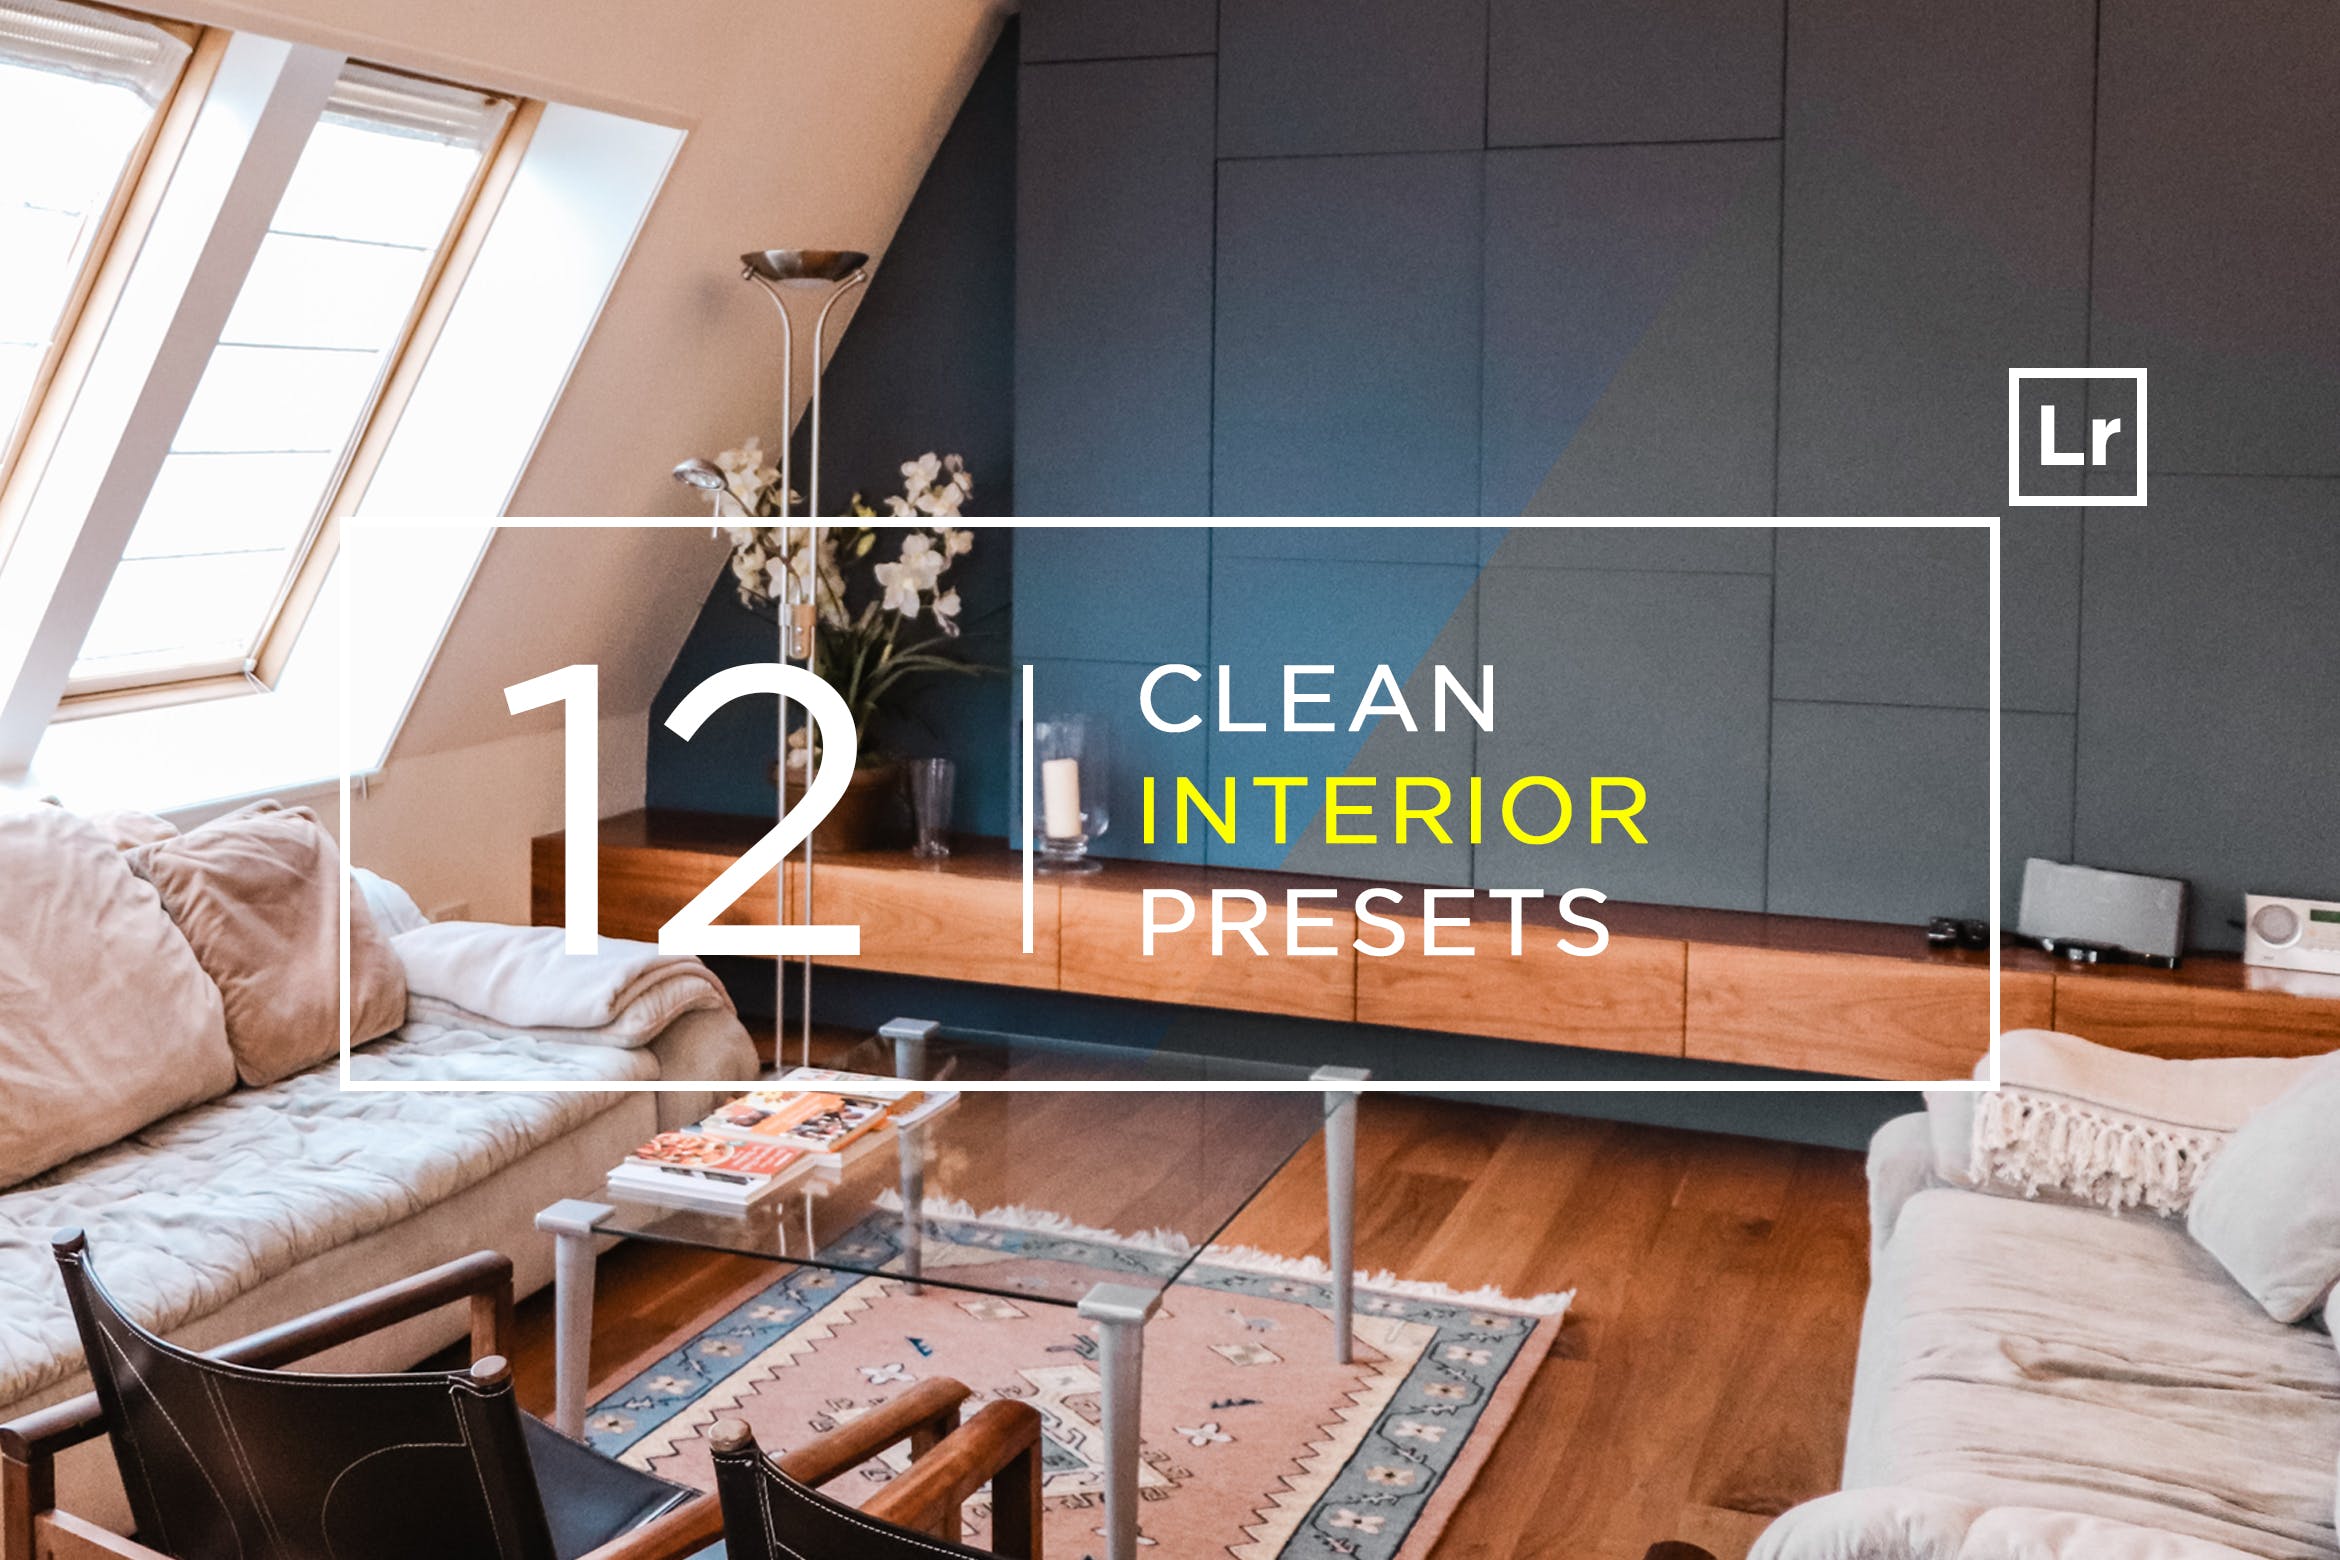 12款室内摄影必备的调色滤镜素材库精选LR预设 12 Clean Interior Lightroom Presets插图